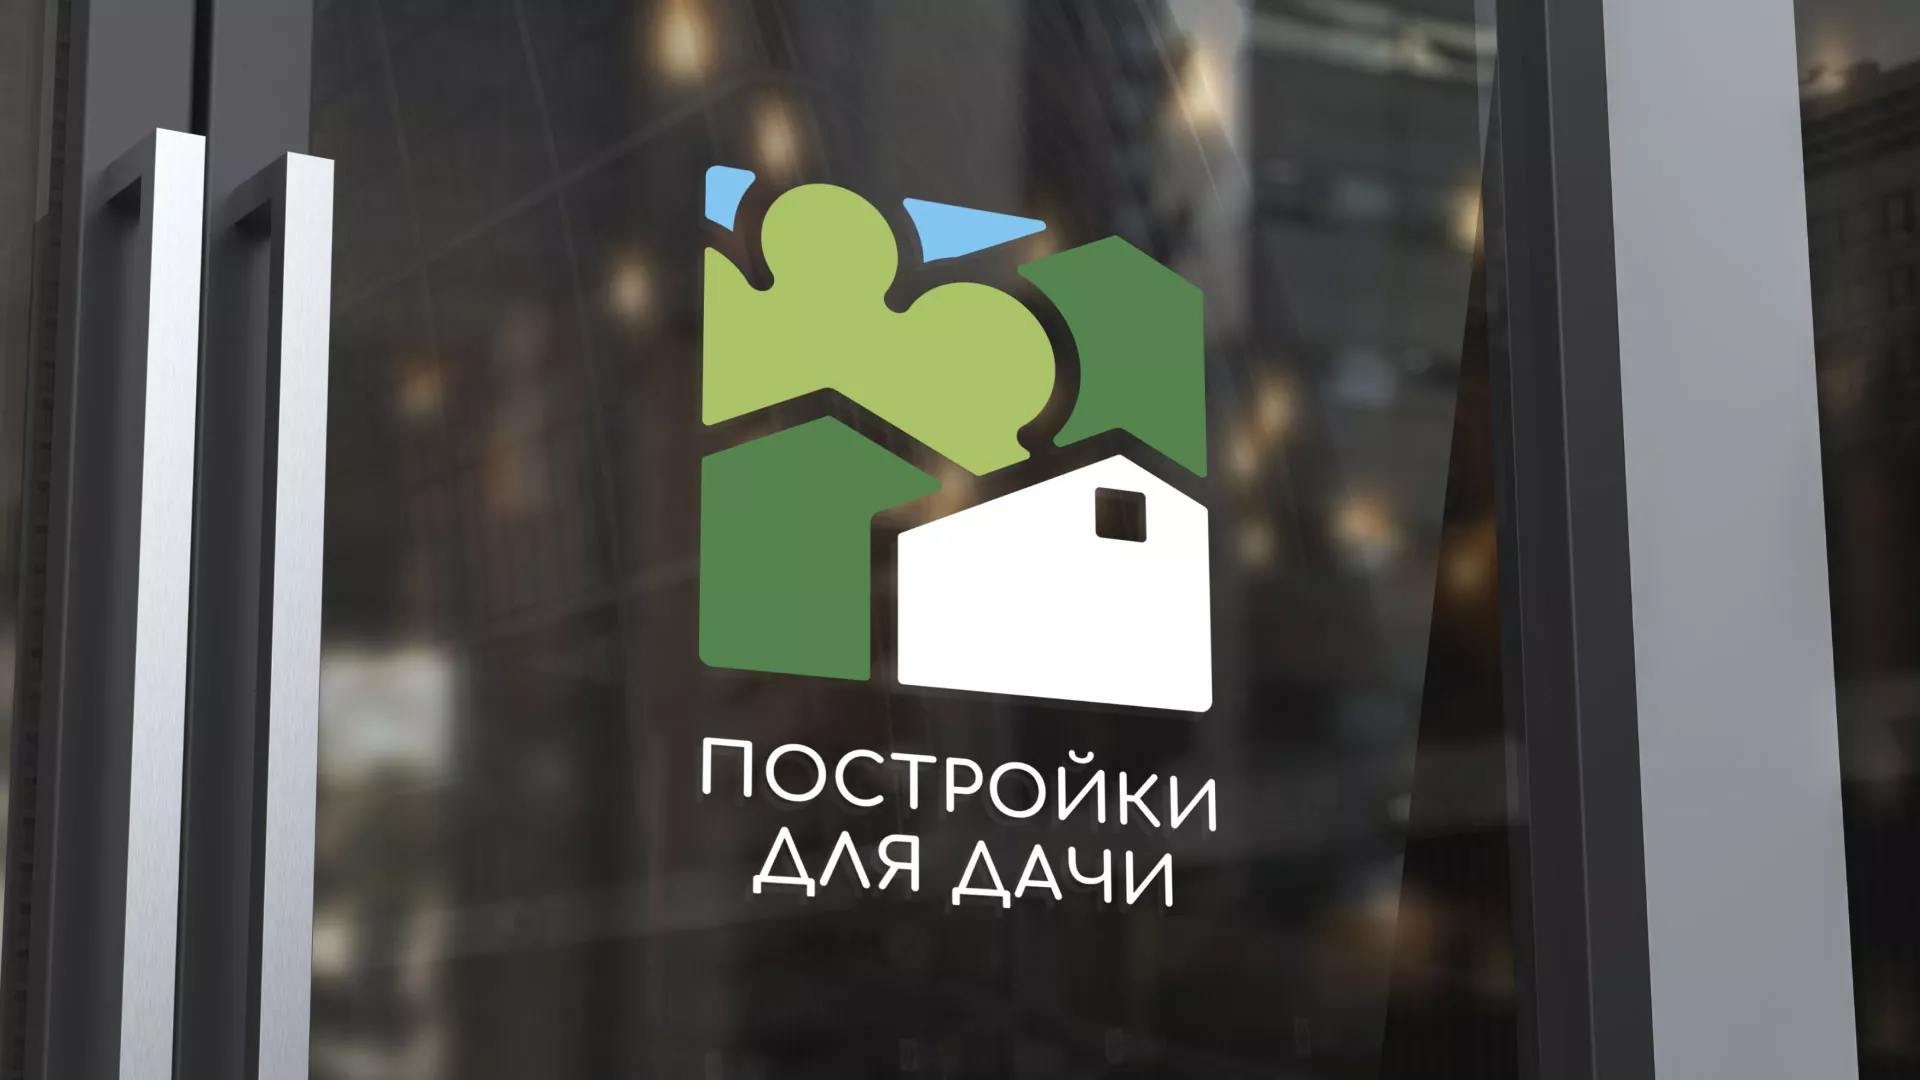 Разработка логотипа в Славянске-на-Кубани для компании «Постройки для дачи»